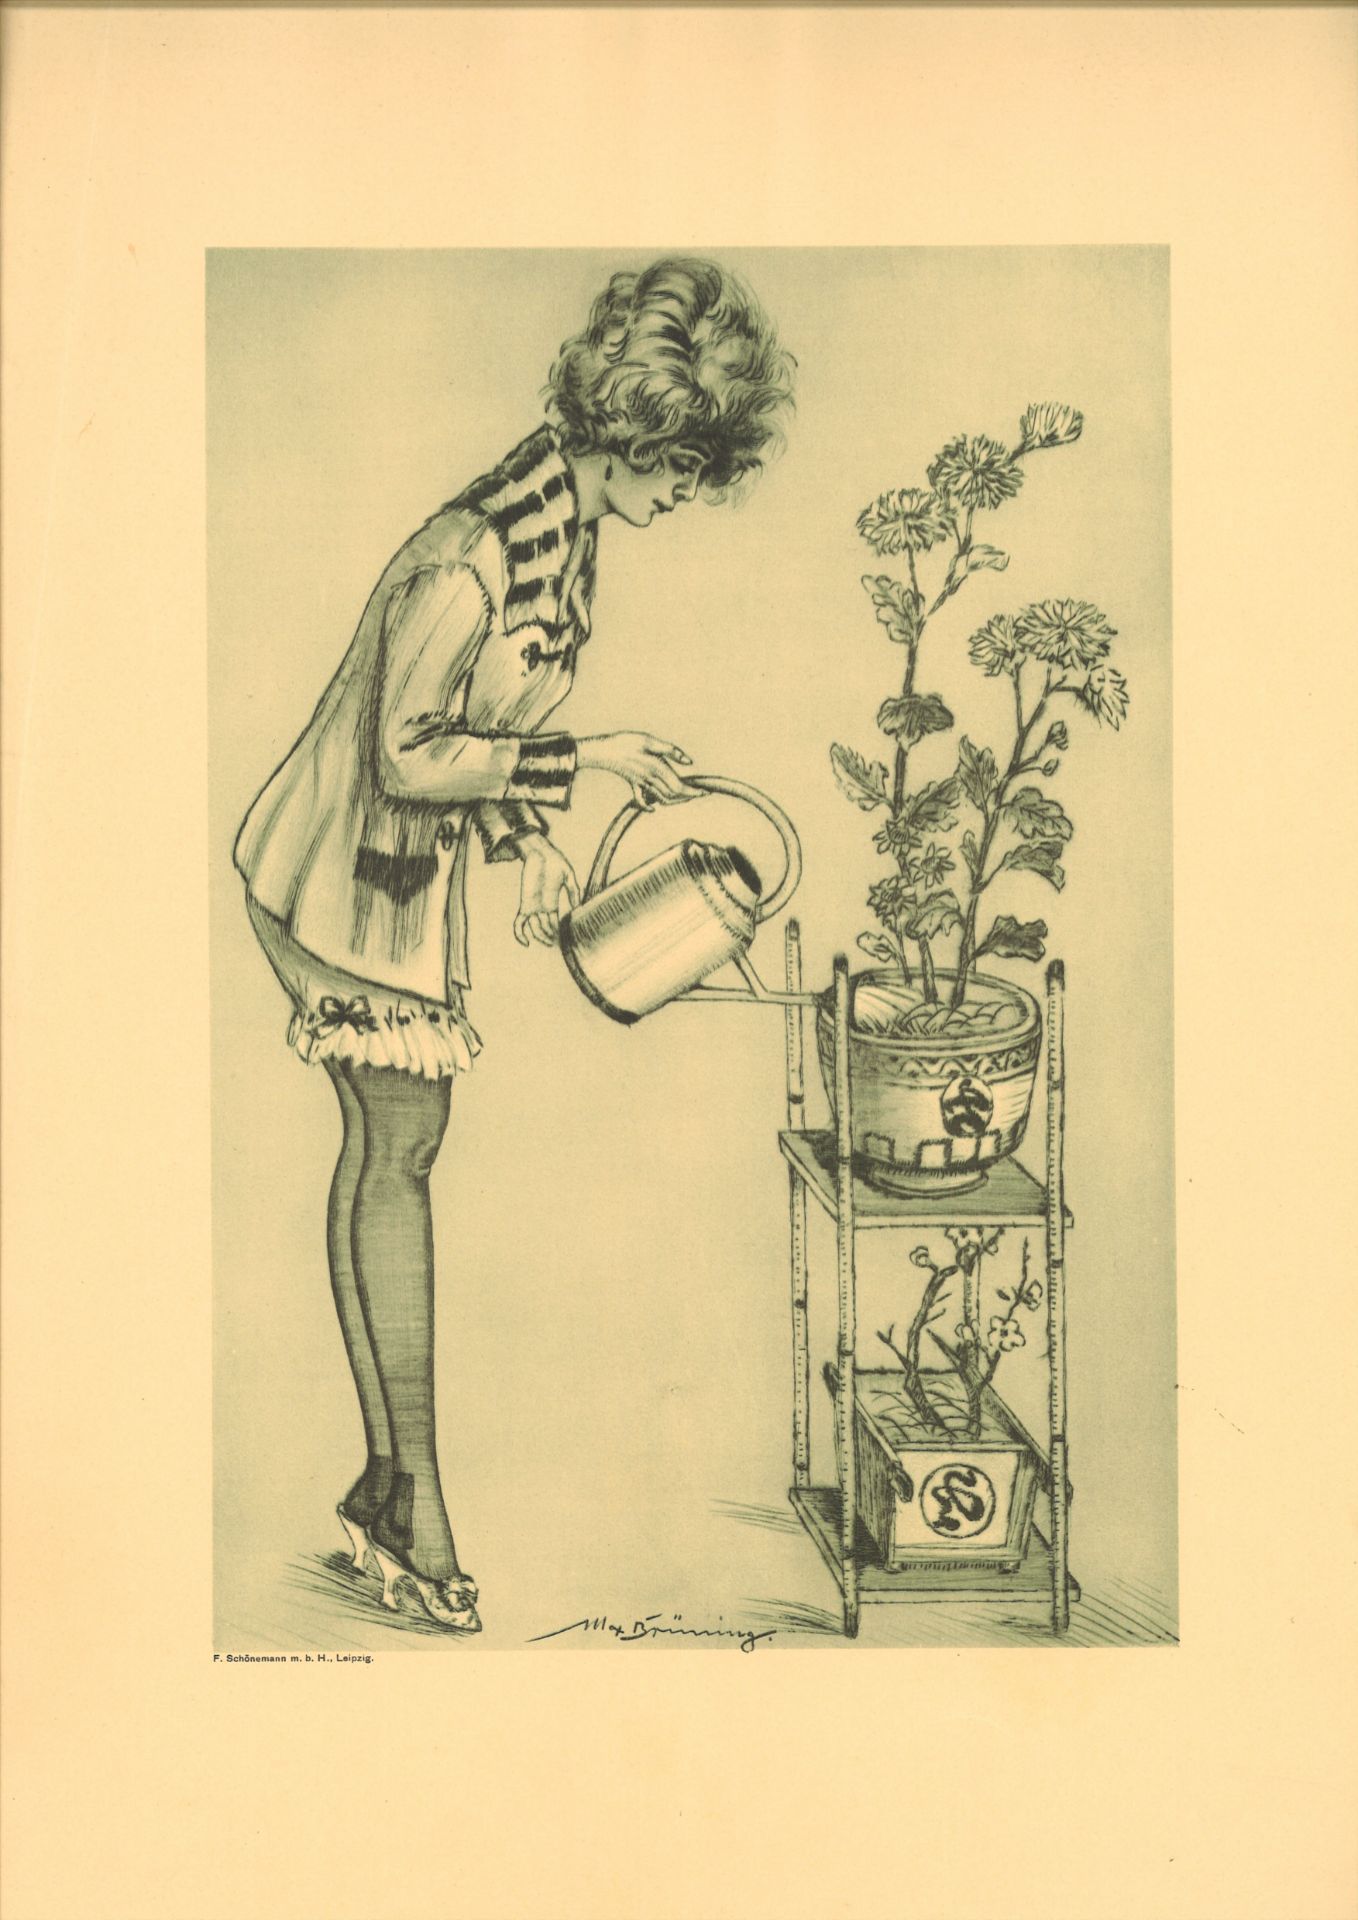 Max Brünning (1887-1968), Farbradierung "Mädchen beim Blumen gießen". Gesamtmaße des Blattes: Höhe